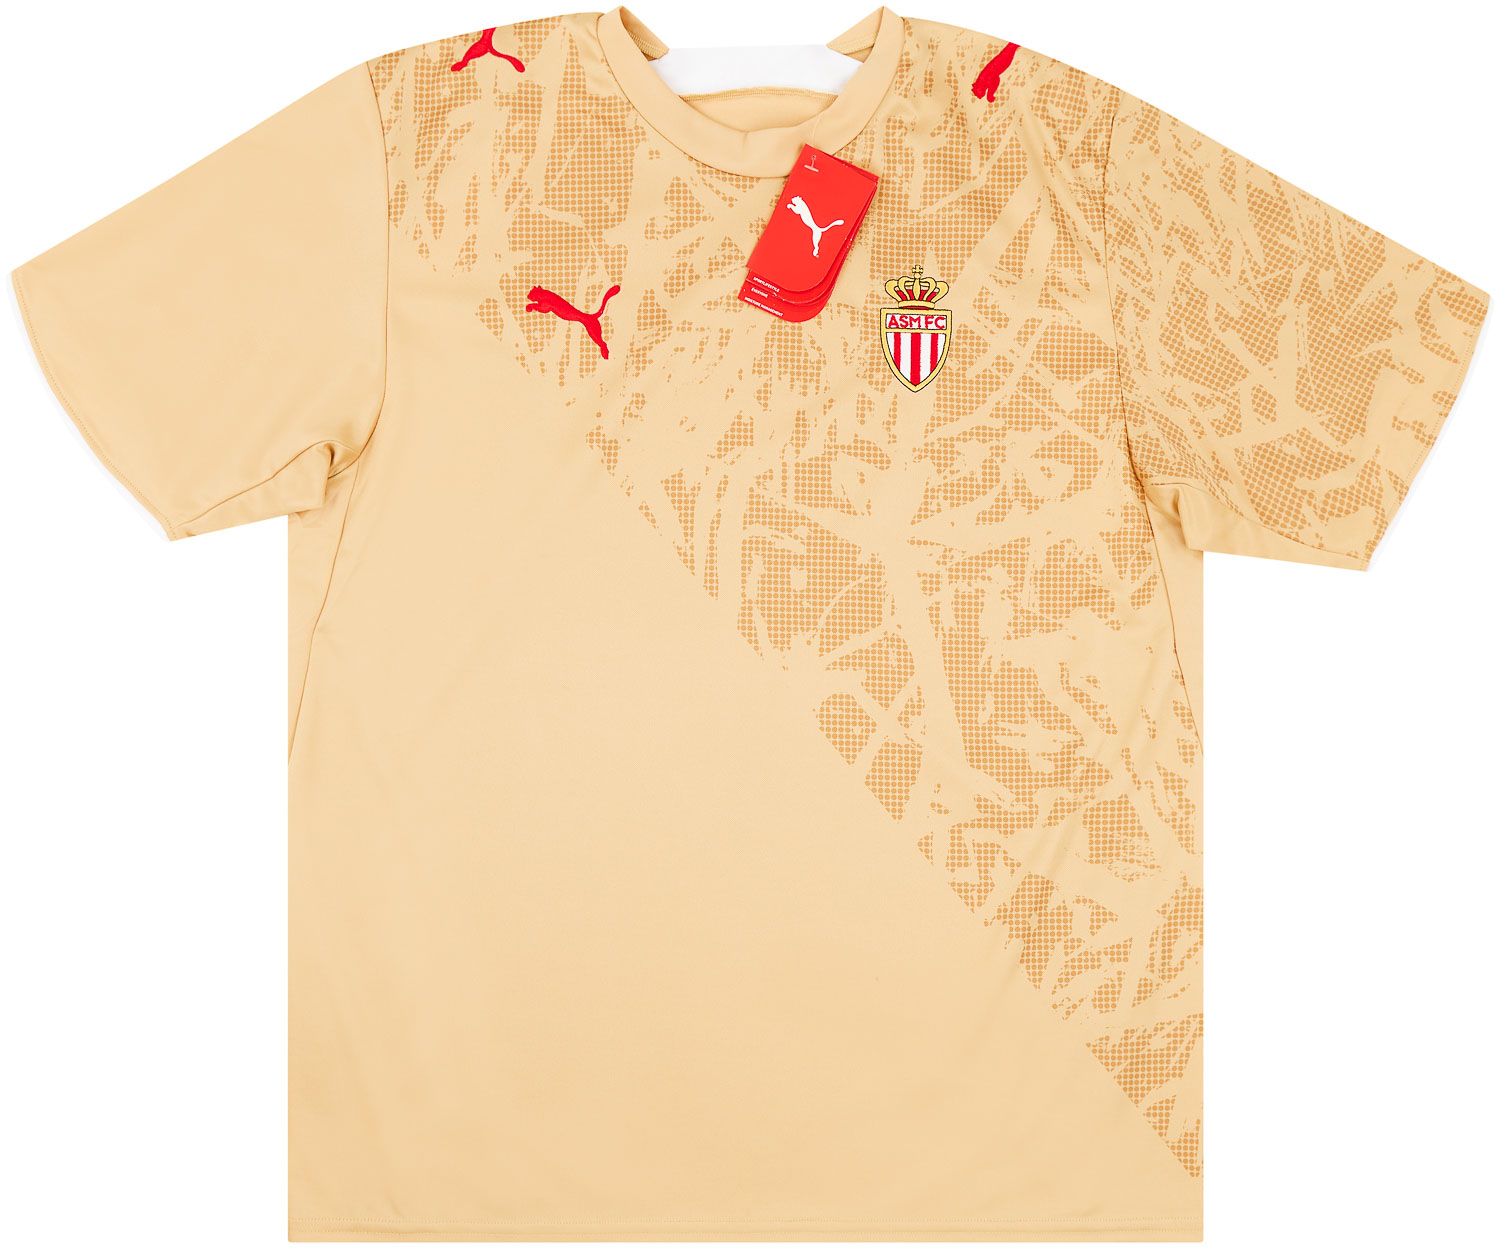 Monaco  Visitante Camiseta (Original)